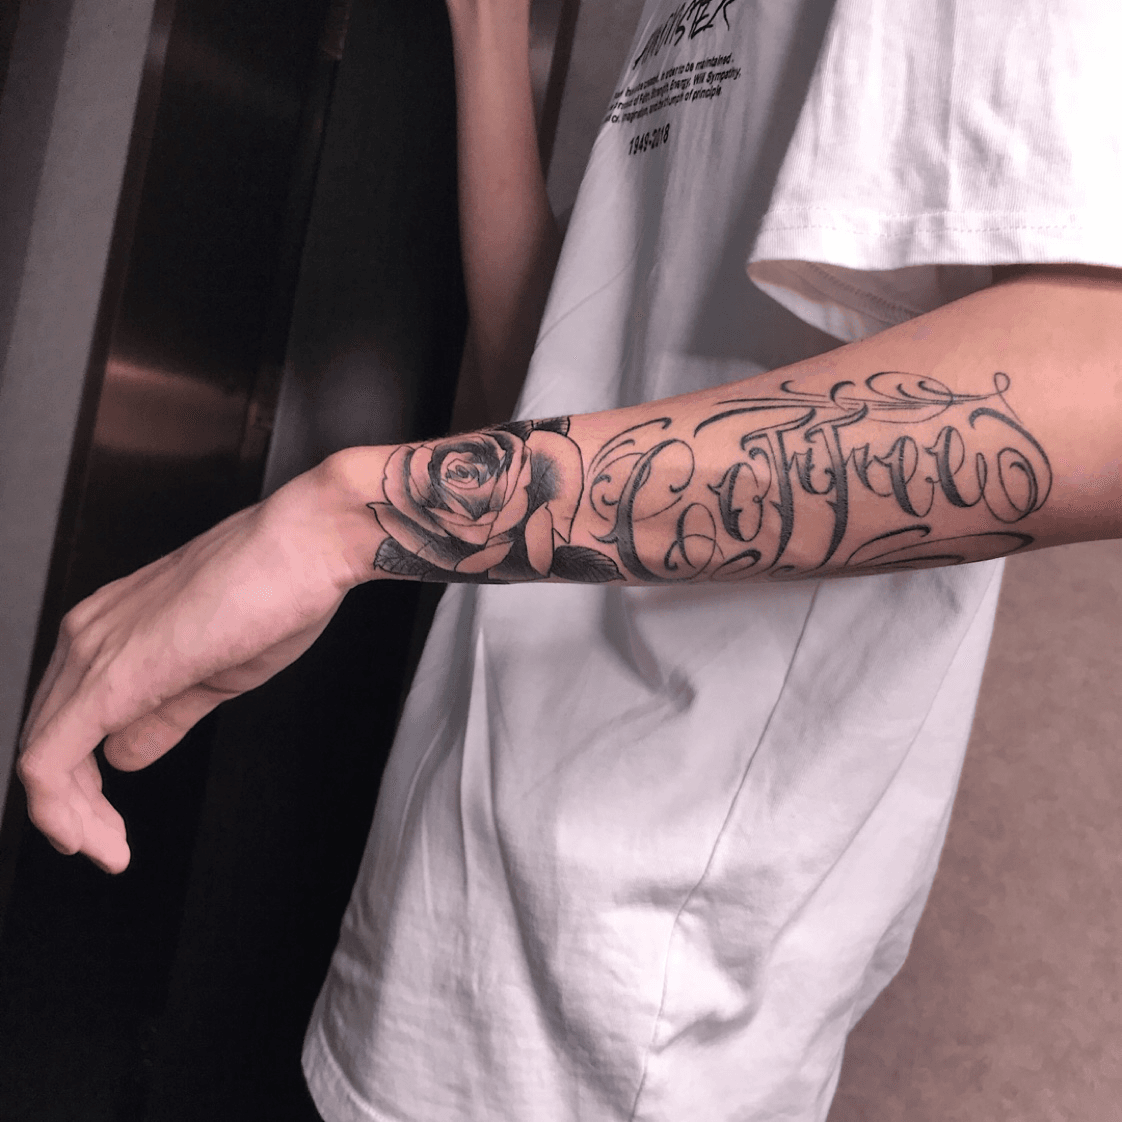 outer forearm name tattoos